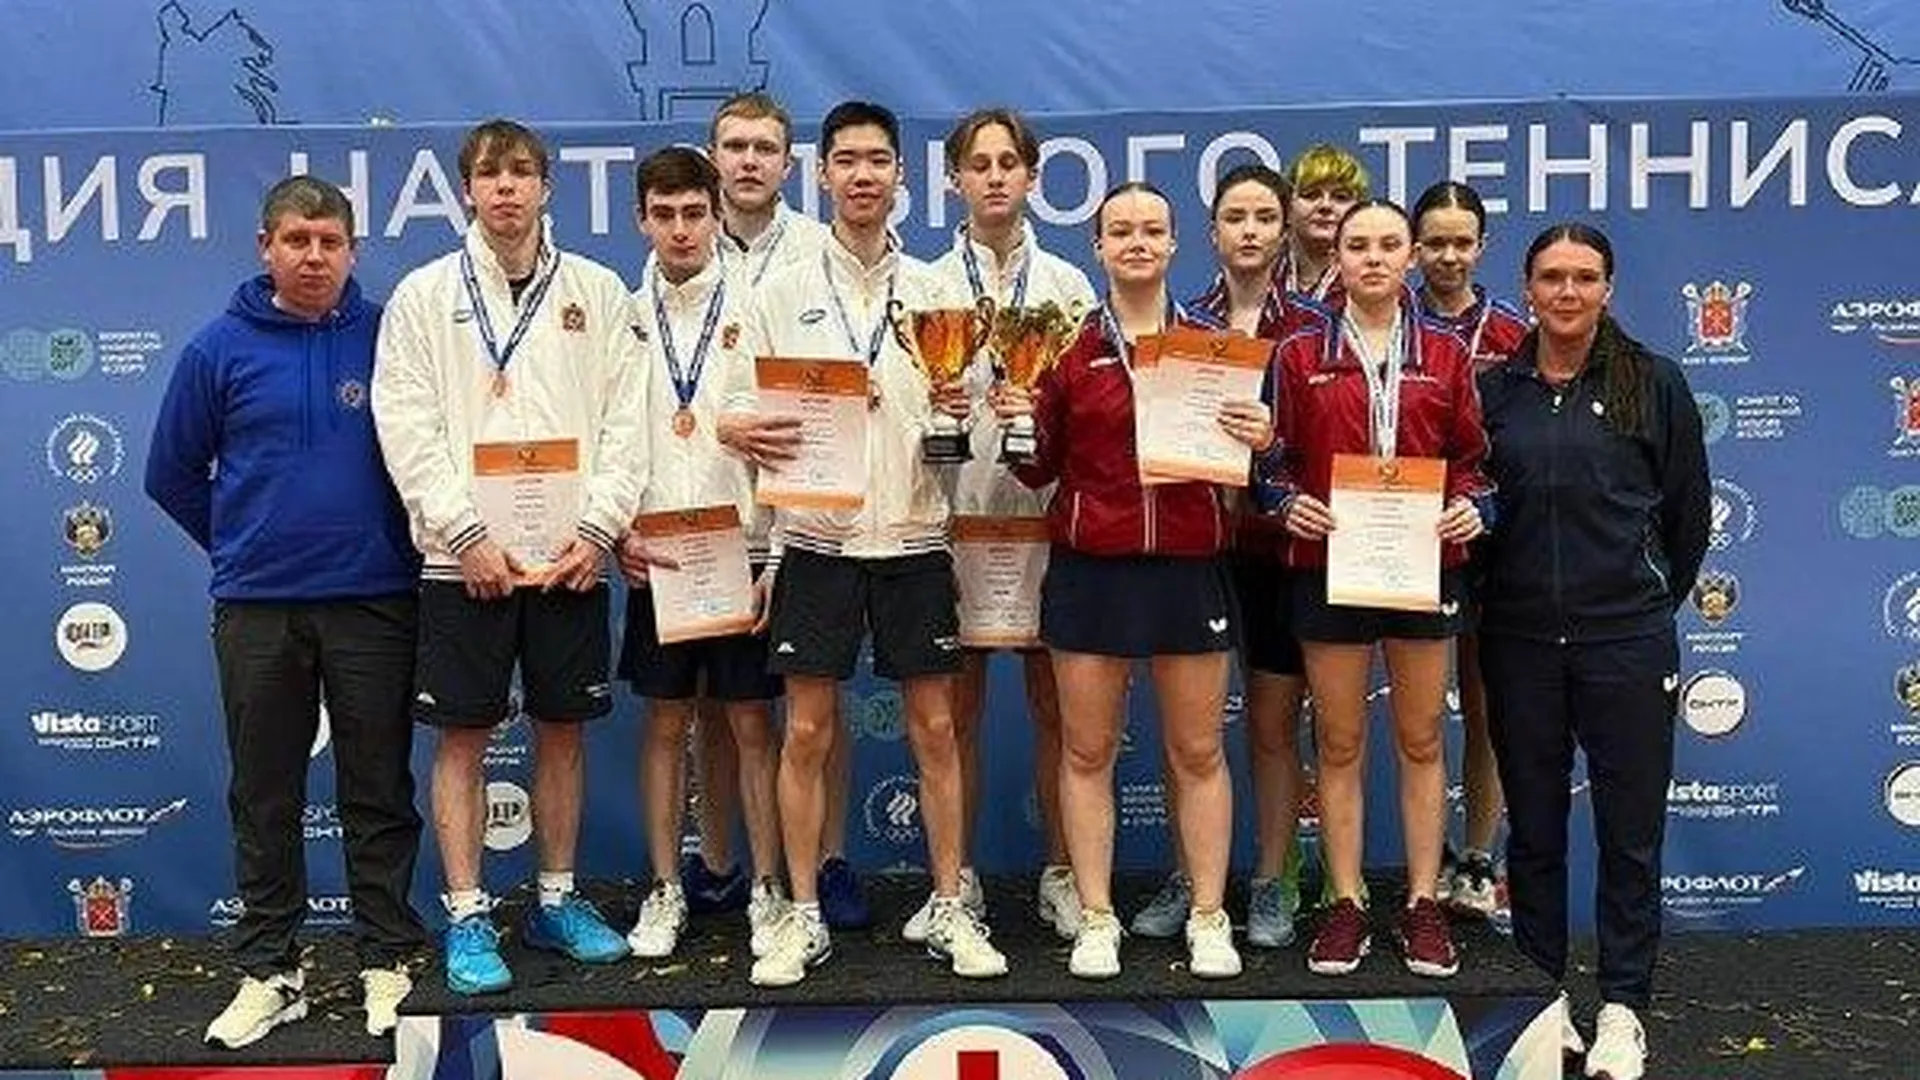 Сборные Подмосковья завоевали 2 медали на первенстве РФ по настольному теннису